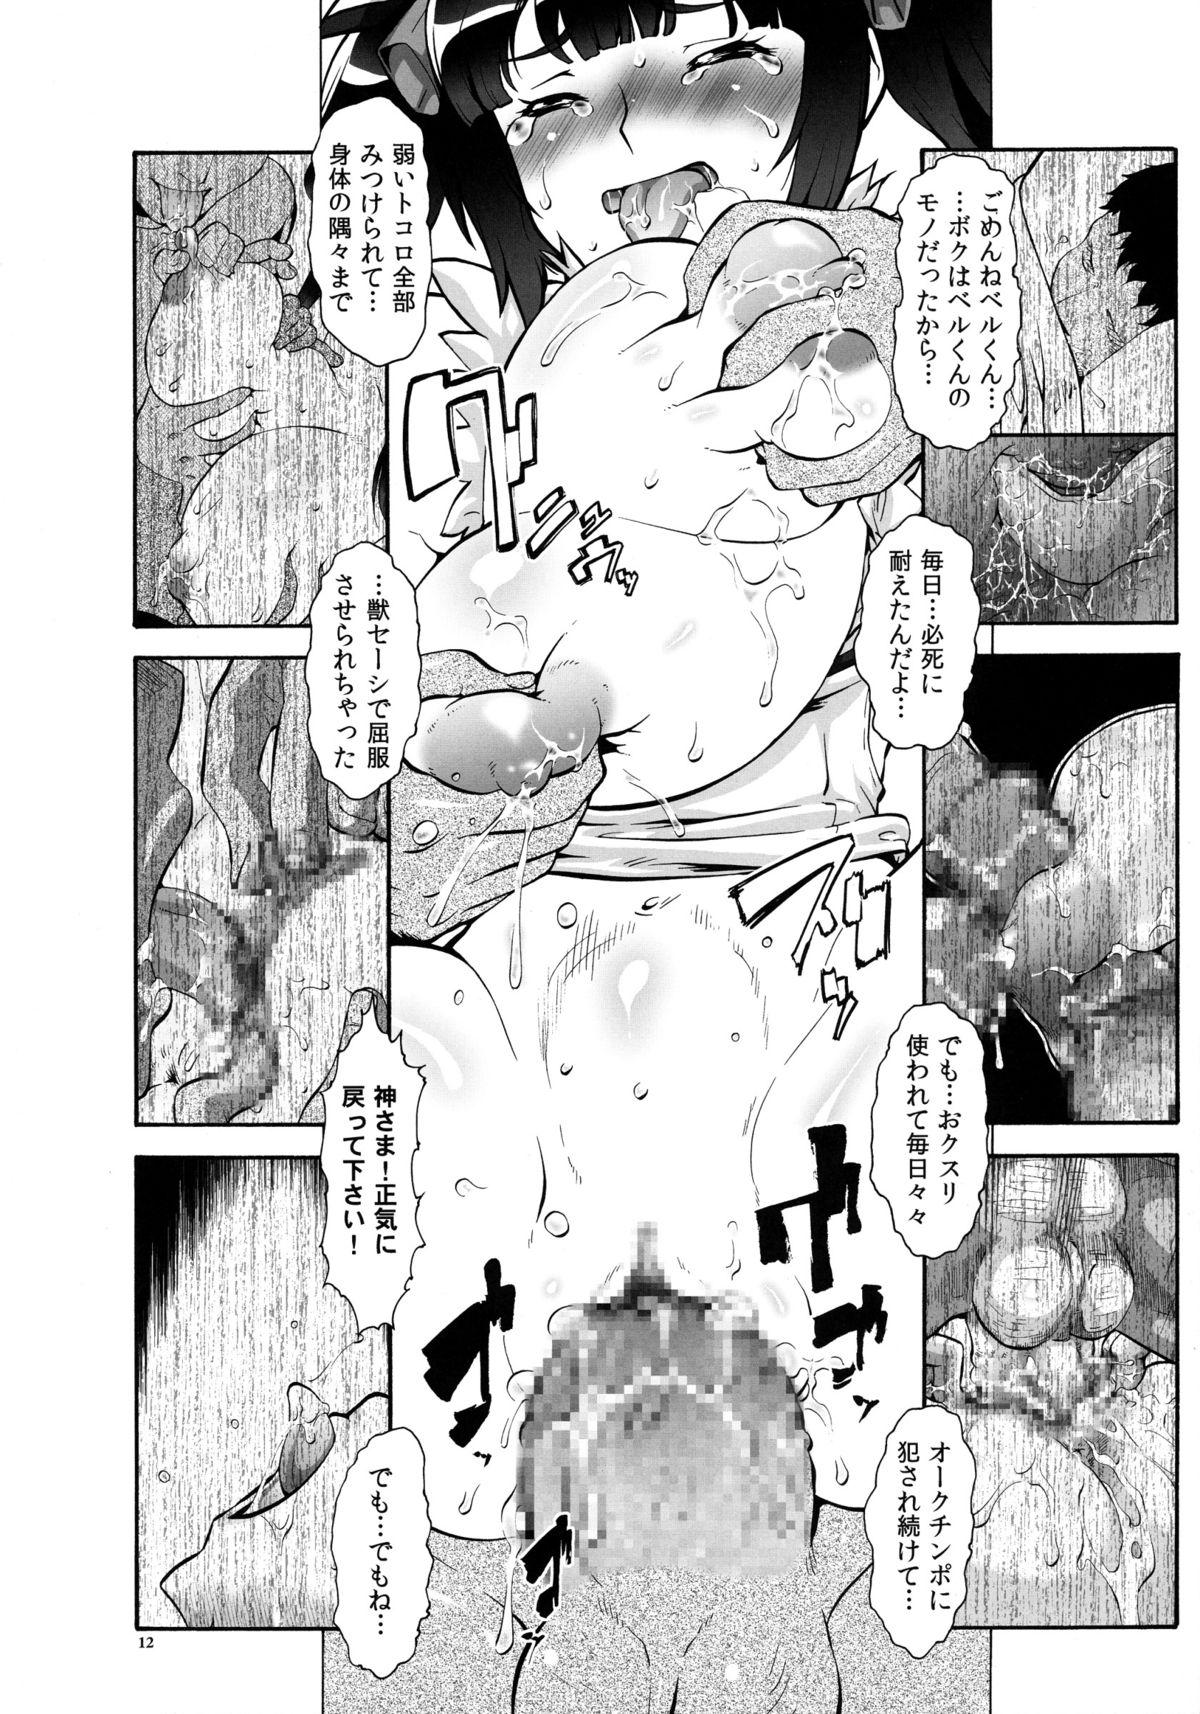 Condom Danmachi - Dungeon ni deai o motomeru no wa machigatteiru darou ka Creampie - Page 12